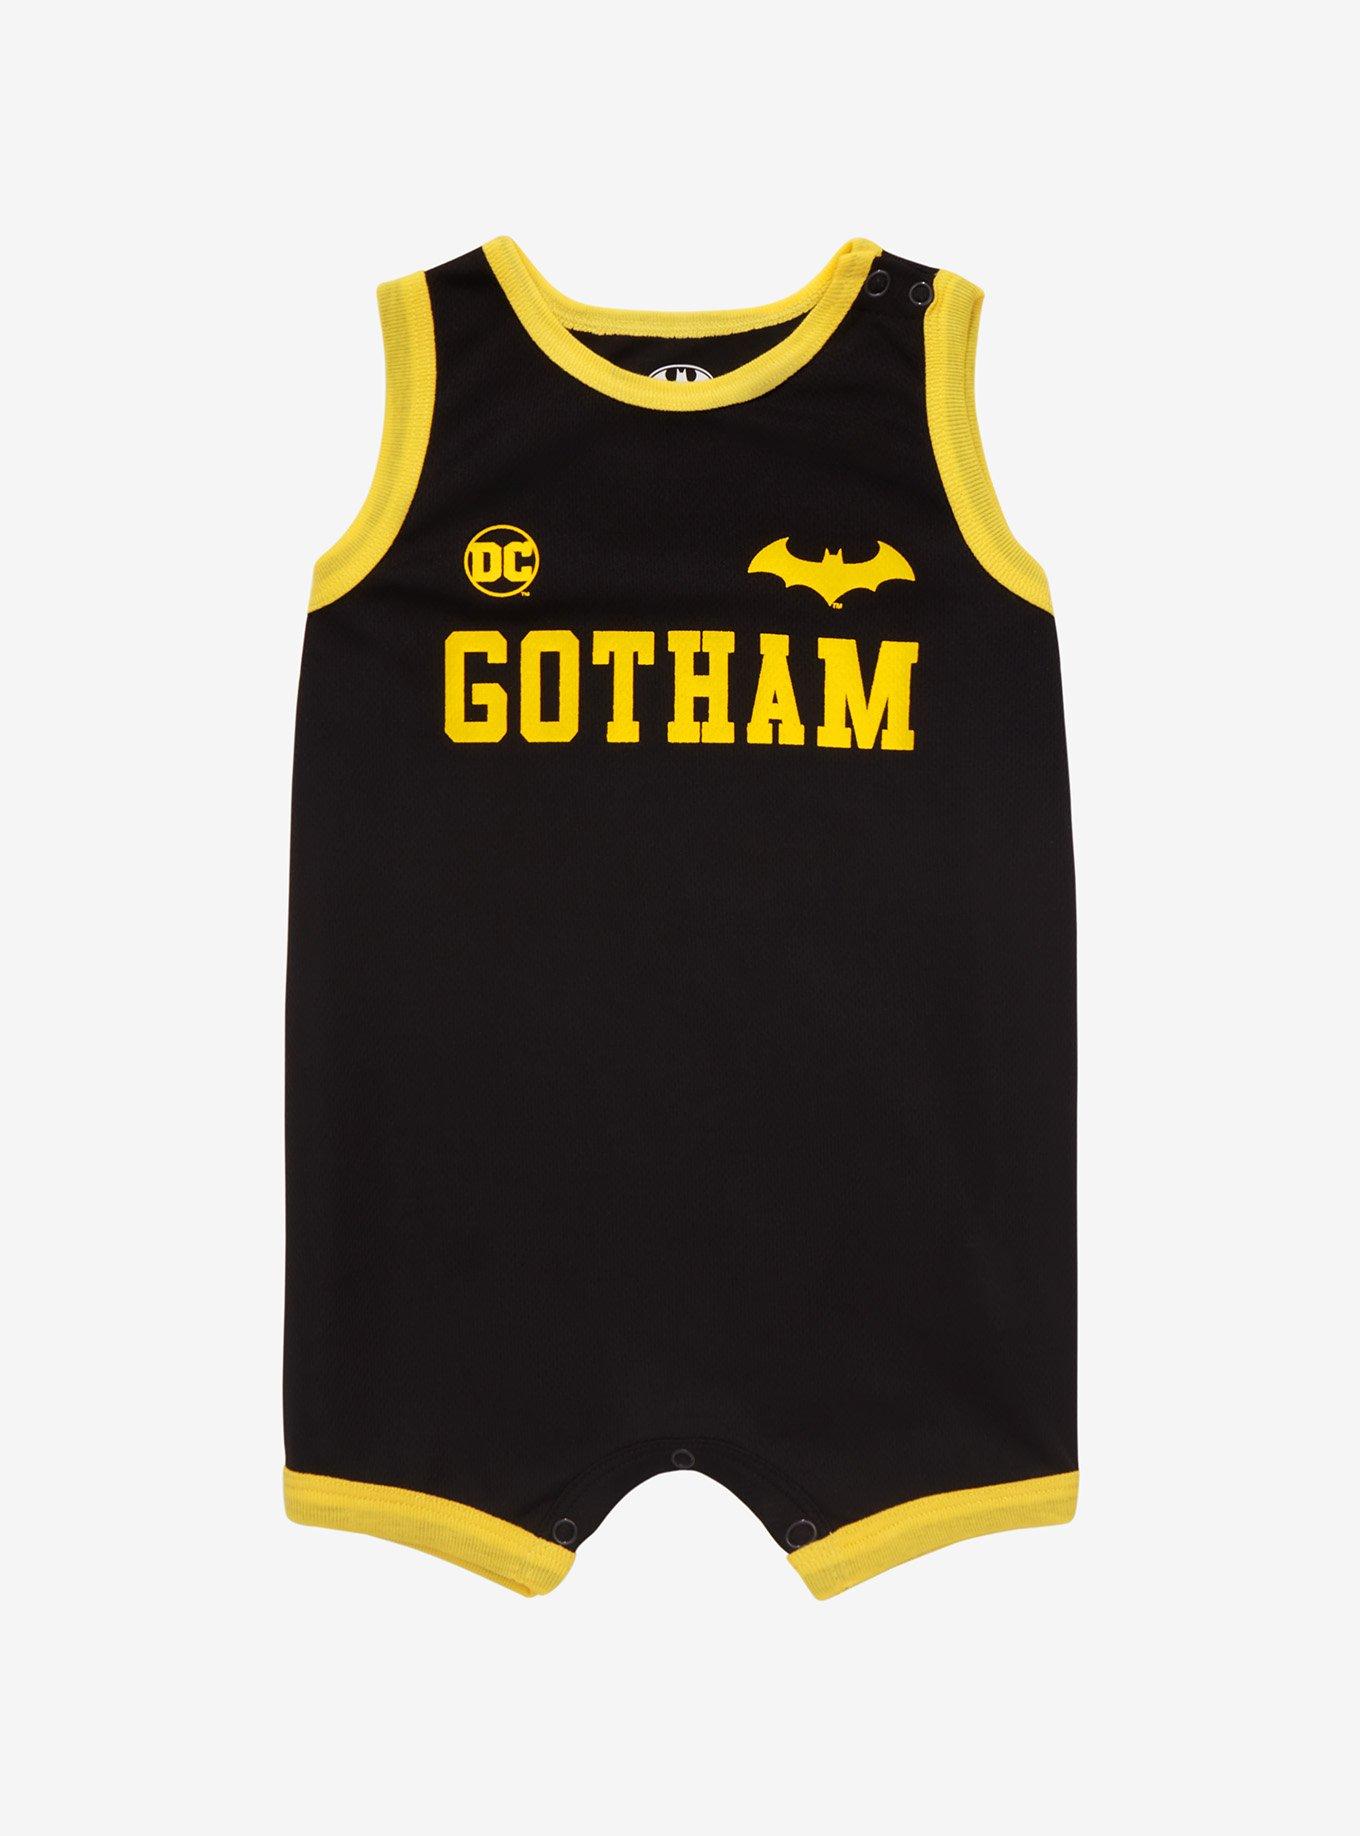 DC Comics Batman Gotham Infant Basketball Jersey Romper - BoxLunch Exclusive, BLACK, hi-res